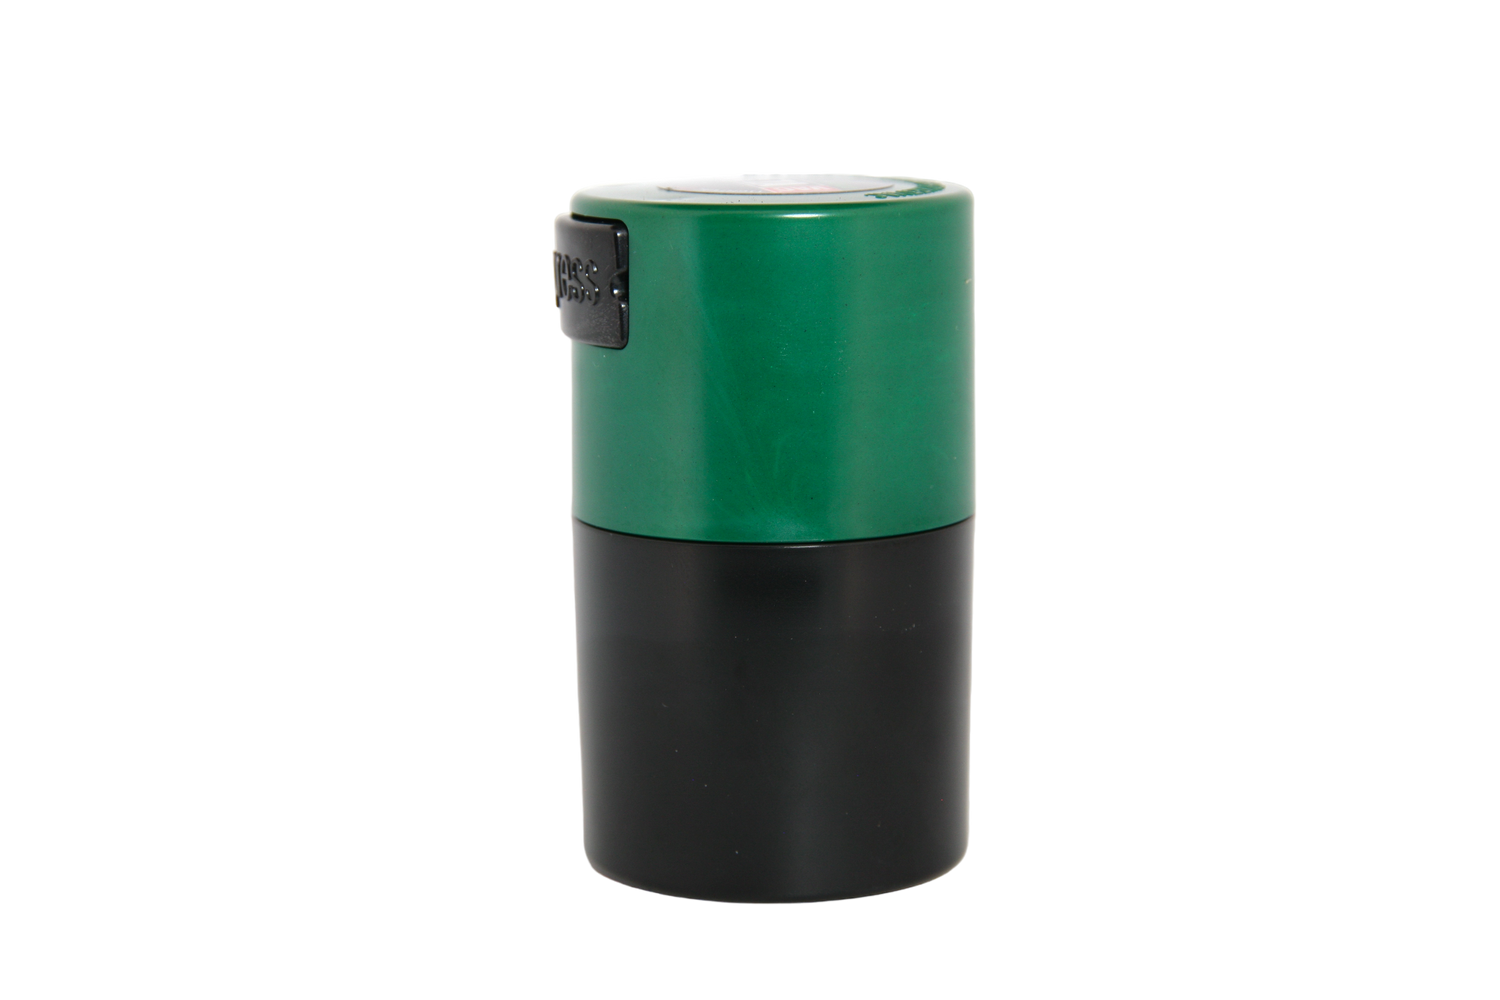 Vitavac Vacuum Sealed Container (Small)